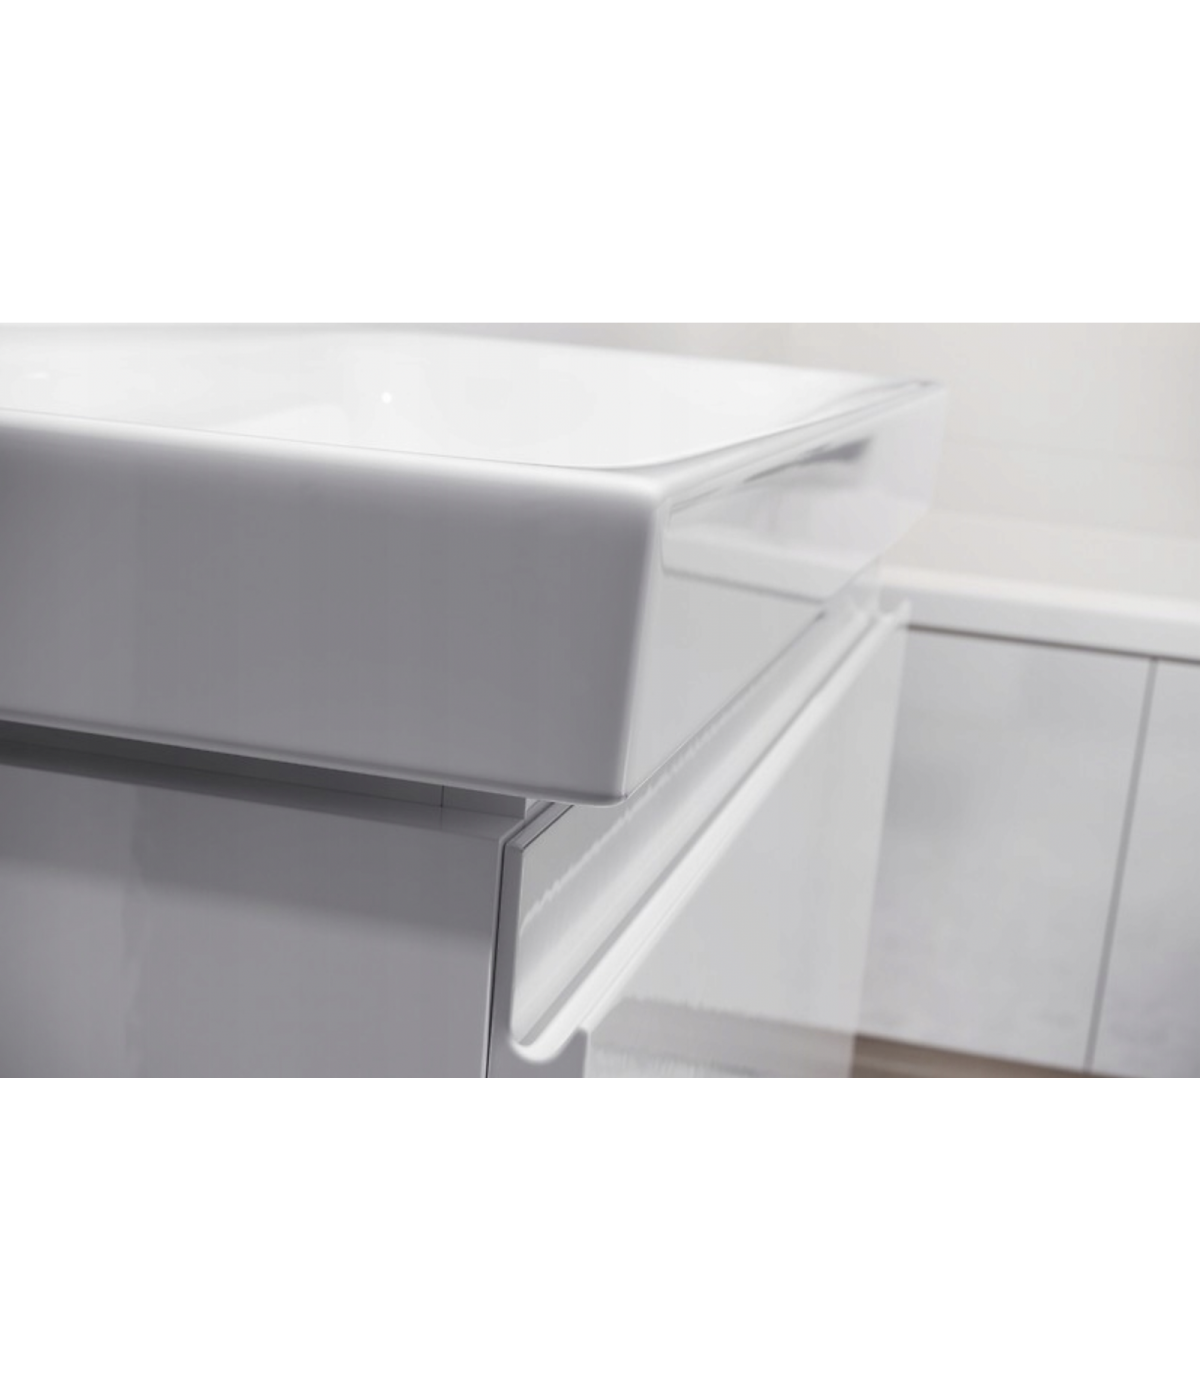 Badmöbel Set MODUO SLIM 60 Waschbecken-Unterschrank mit Waschbecken, 2-Schubladen, Weiß